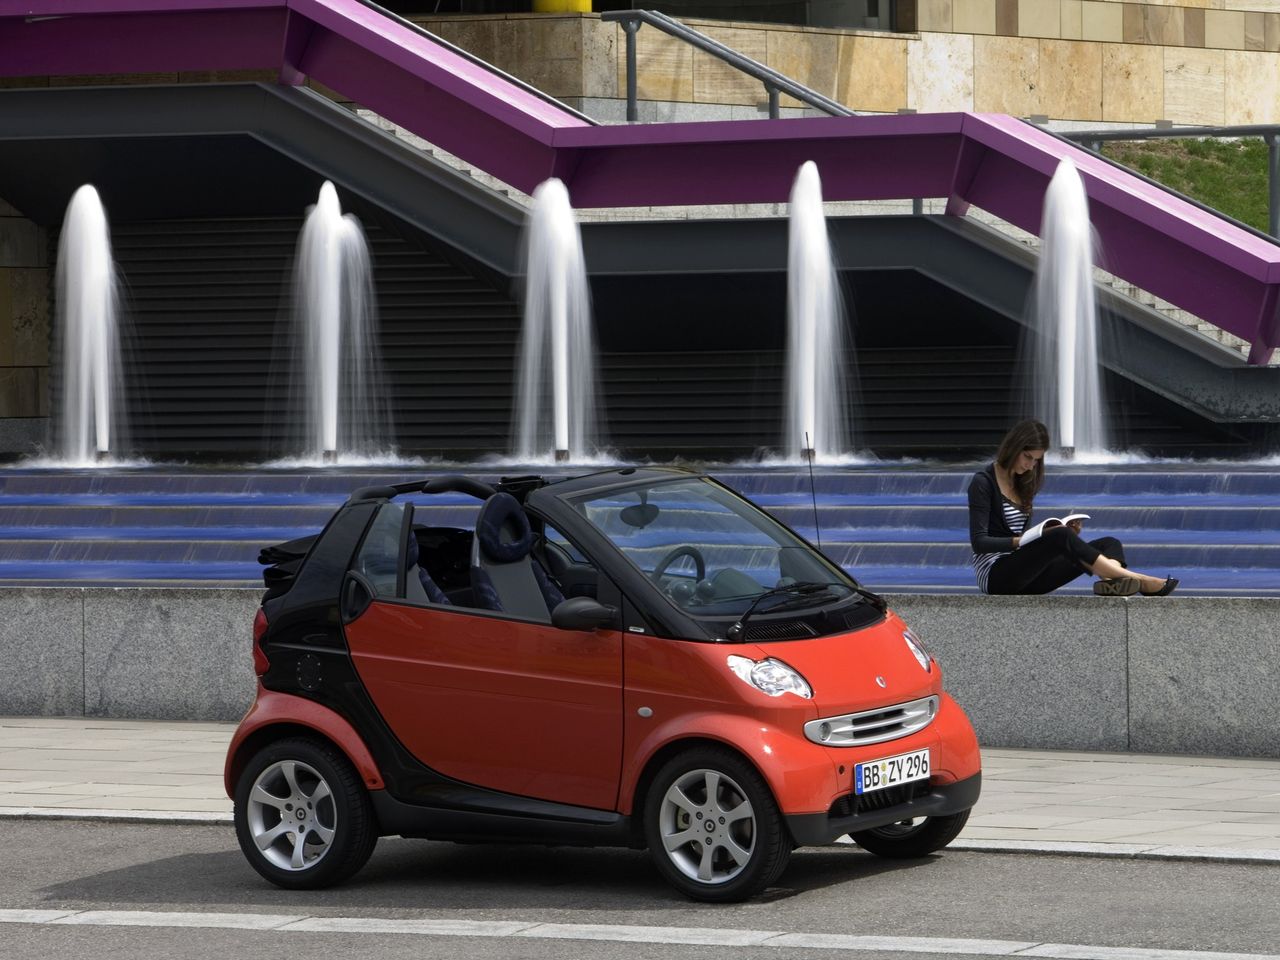 W 2030 roku zamiast Smarta do miasta lepiej kupić wygodnego, dużego SUV-a 